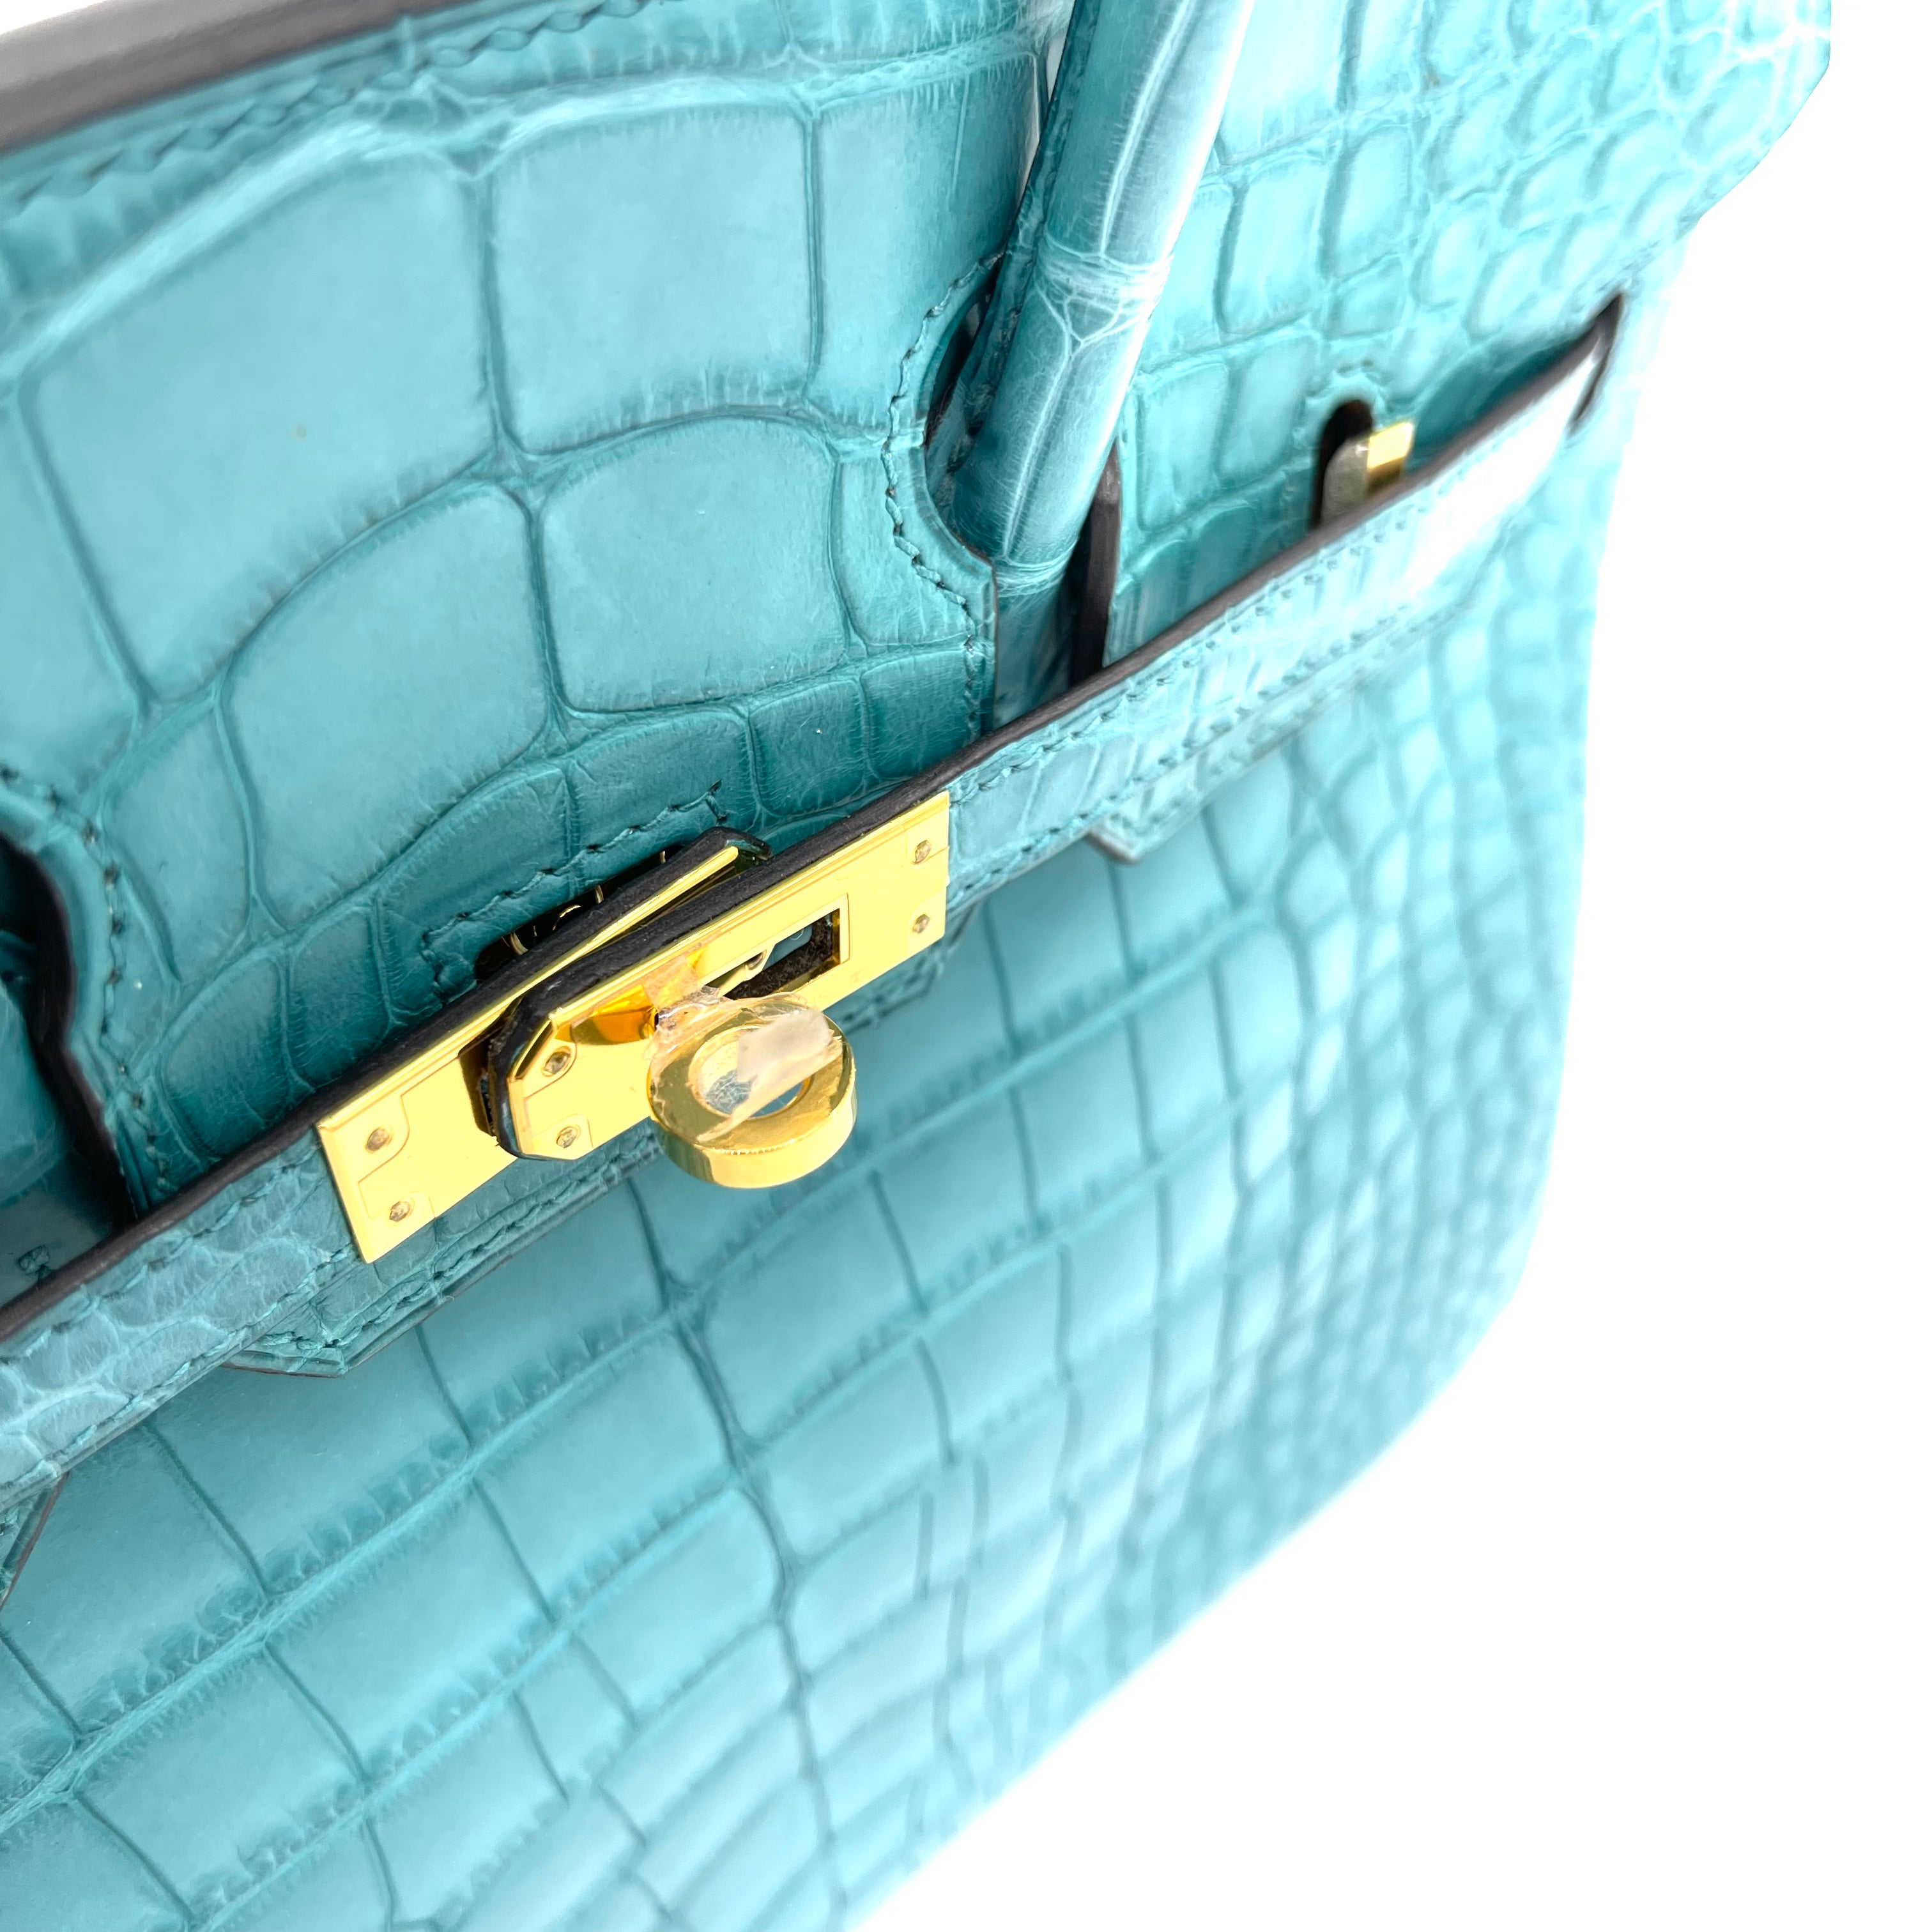 crocodile blue birkin bag